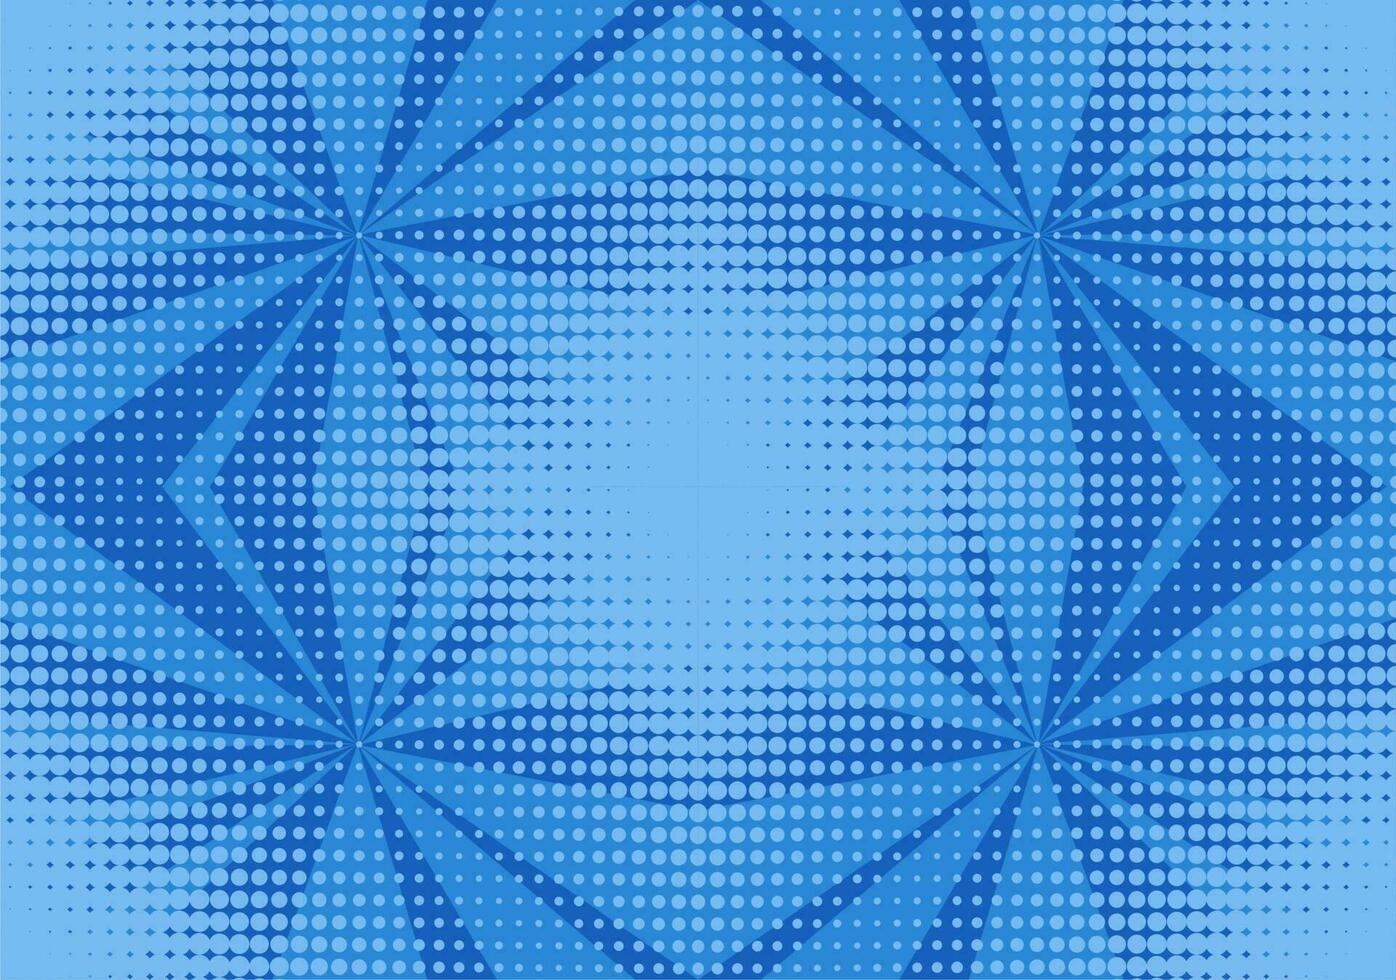 Pop Kunst Halbton Hintergrund. Comic Starburst Muster. Karikatur retro Sunburst Wirkung. Blau Banner mit Punkte und Strahlen vektor